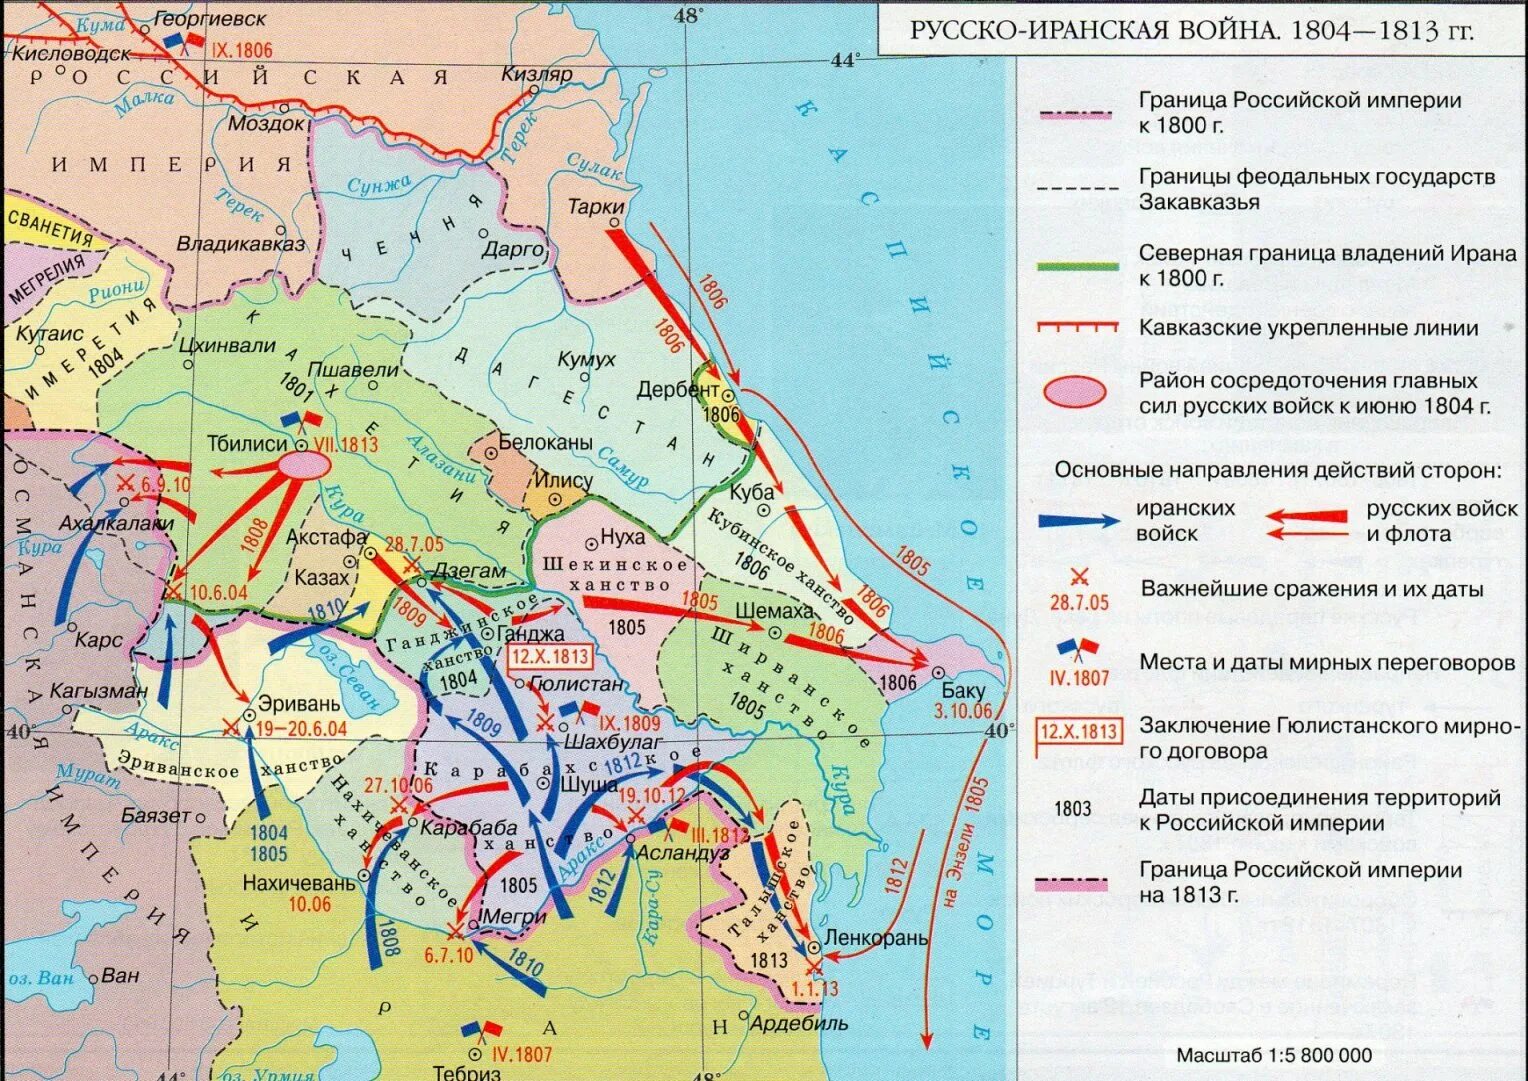 Договор при александре 1. Карта русско-иранской войны 1804-1812.